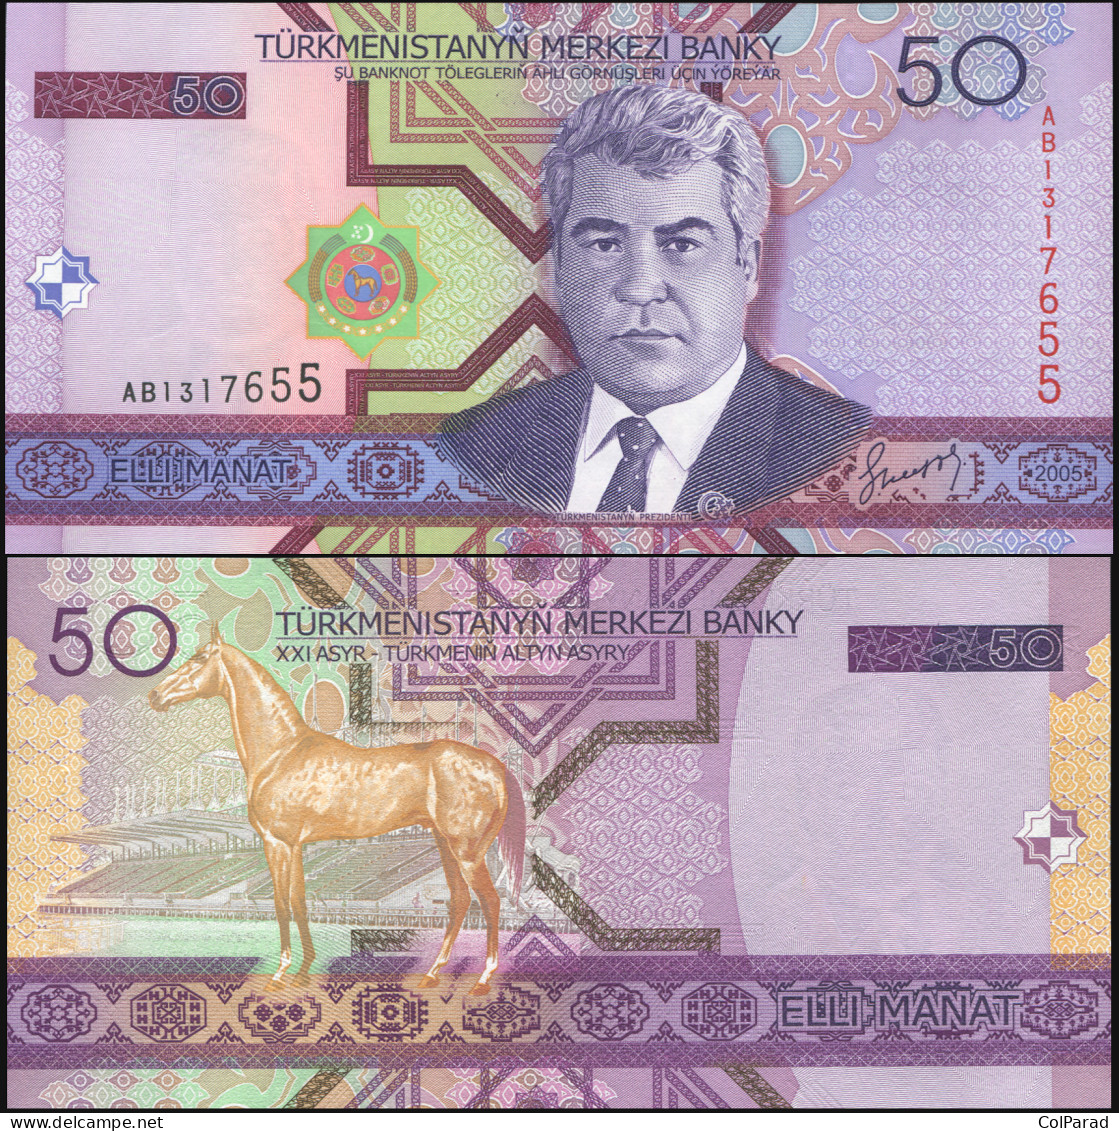 TURKMENISTAN 50 MANAT - 2005 - Unc - P.17a Paper Banknote - Turkmenistan